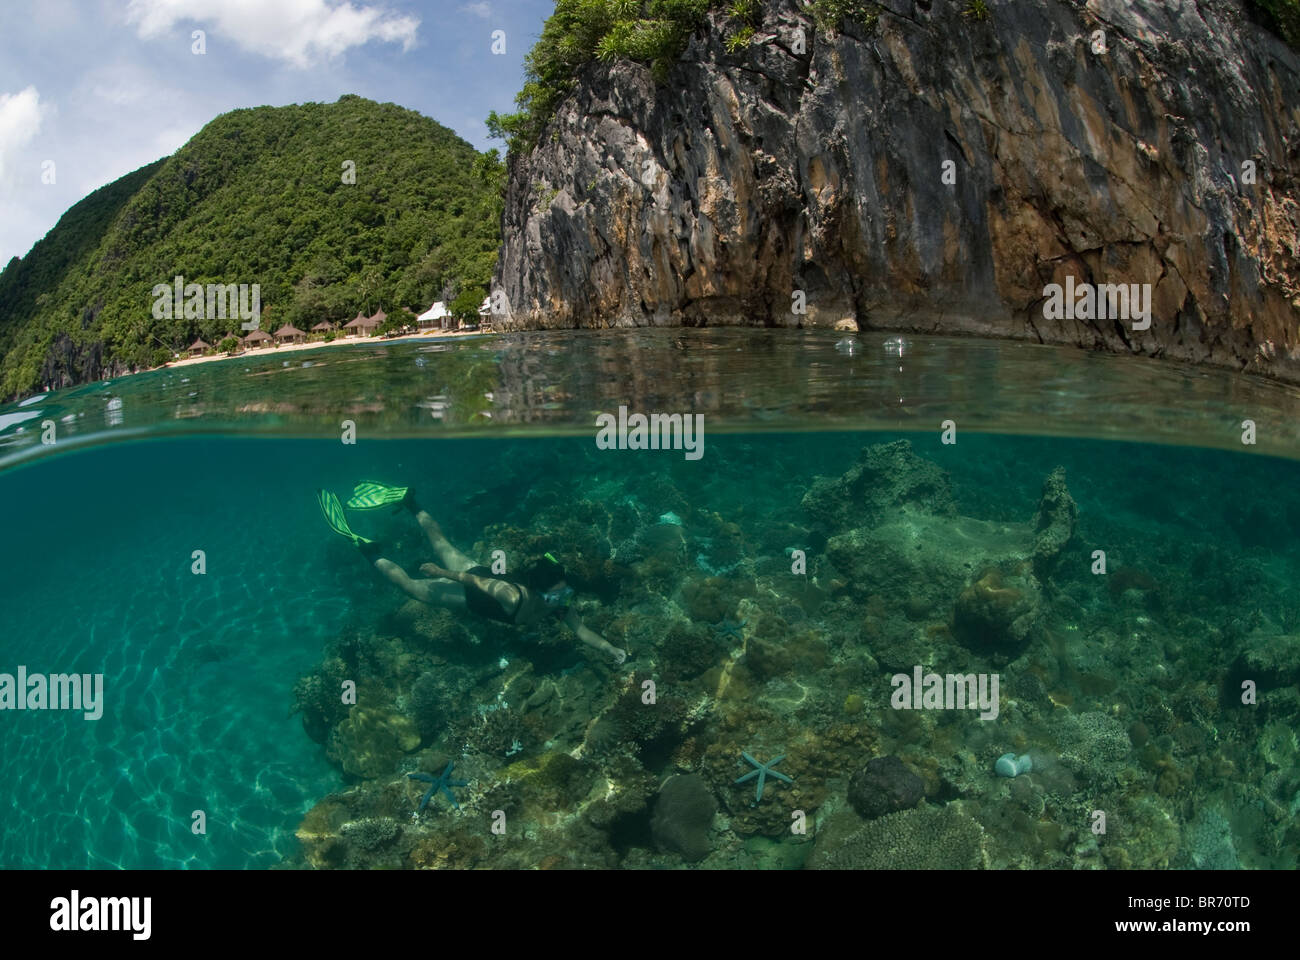 Nivel dividida mostrando buceador, arrecifes de coral y acantilados de piedra caliza en la península de Caramoan, Camarines Sur, Luzón, Filipinas 2008 Foto de stock